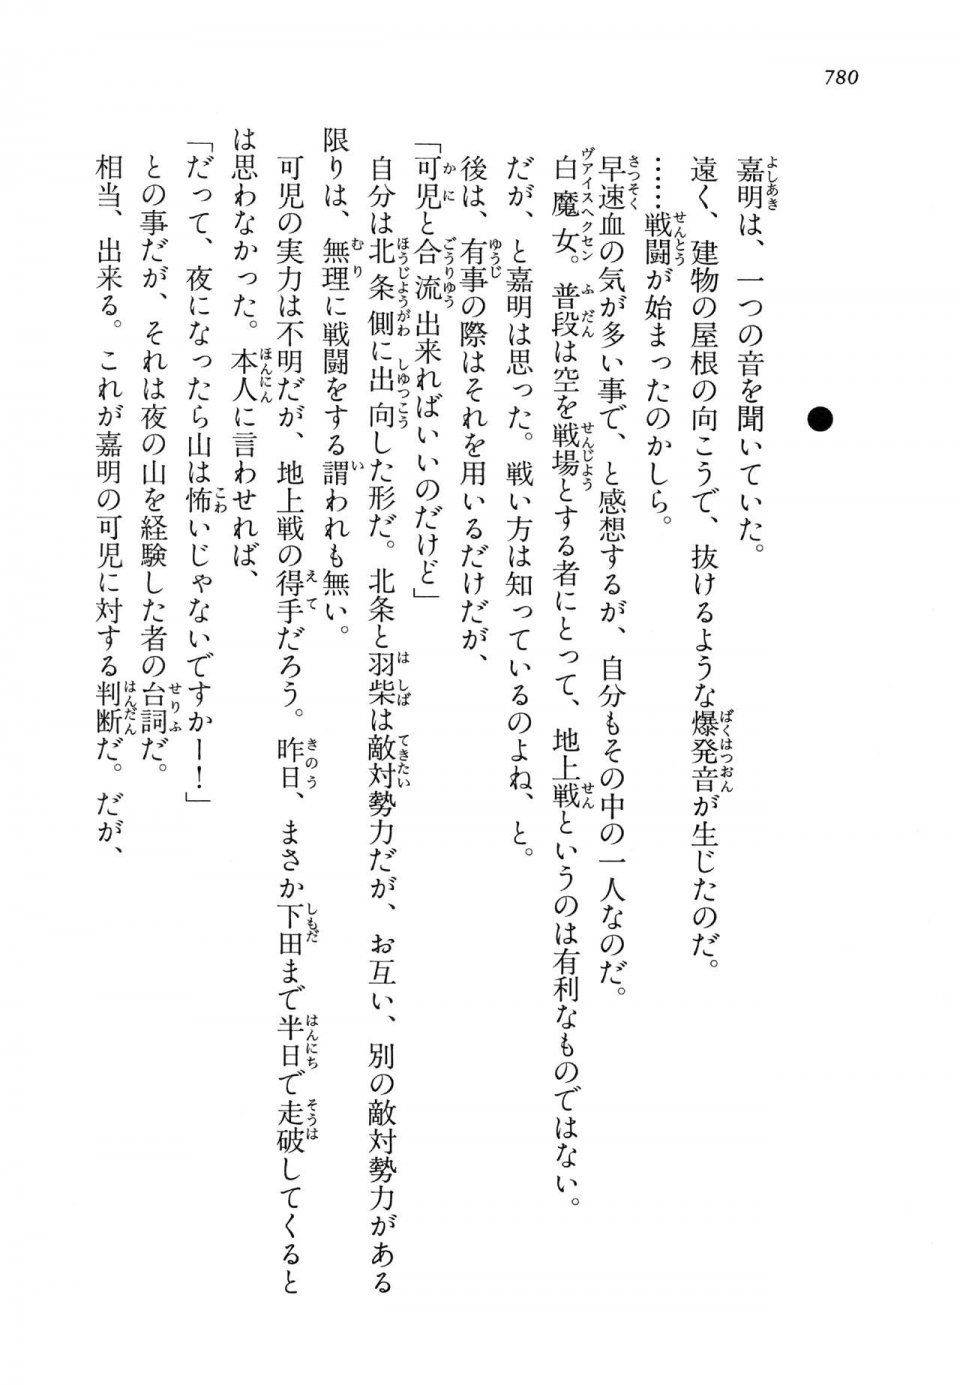 Kyoukai Senjou no Horizon LN Vol 14(6B) - Photo #780